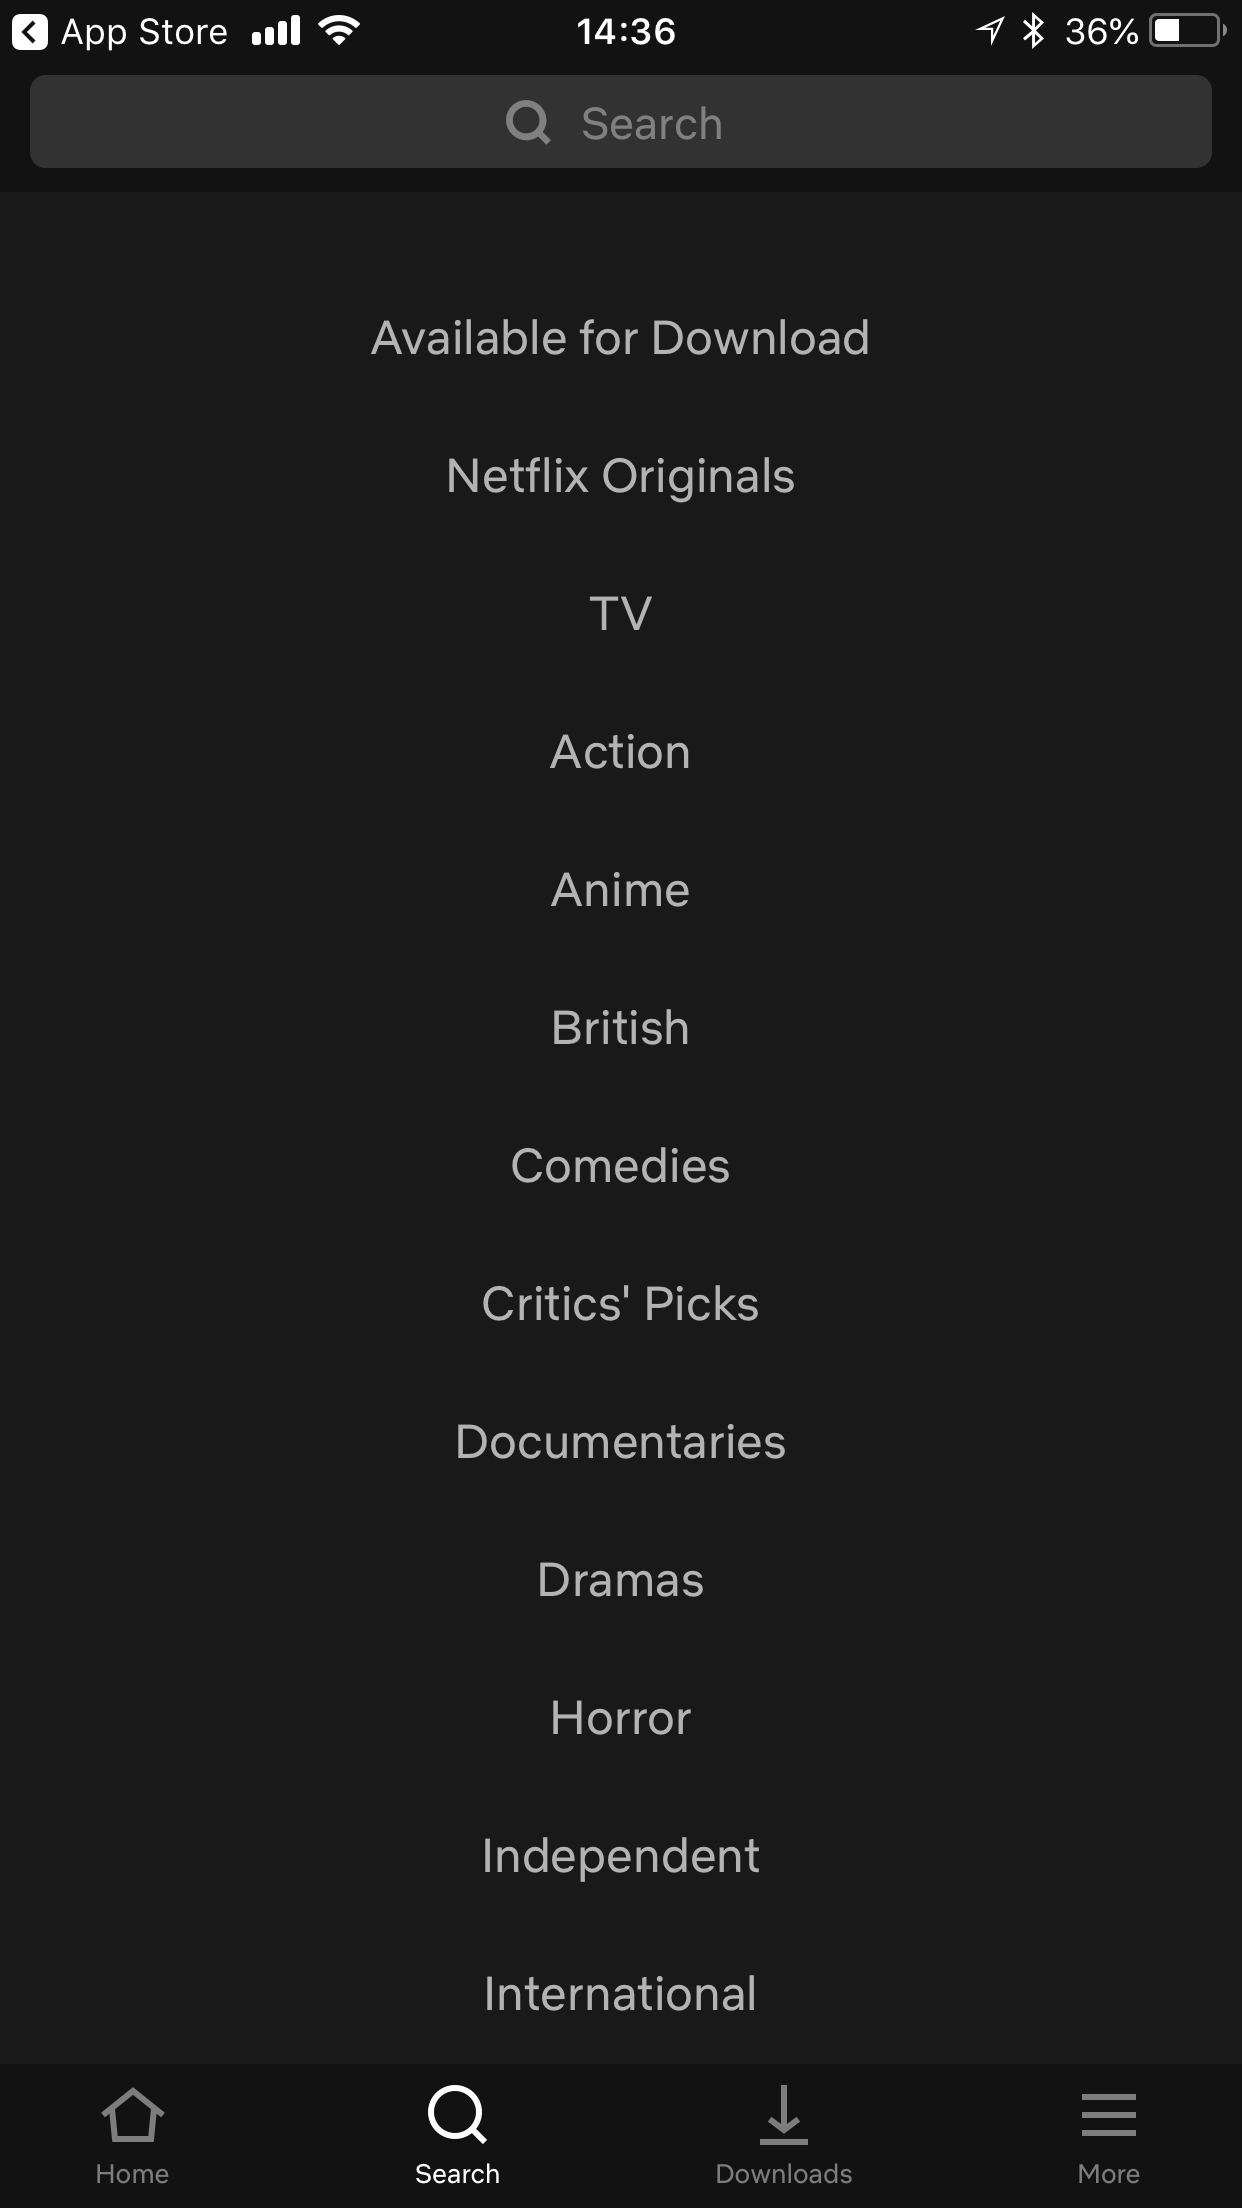 Netflix categories search screen